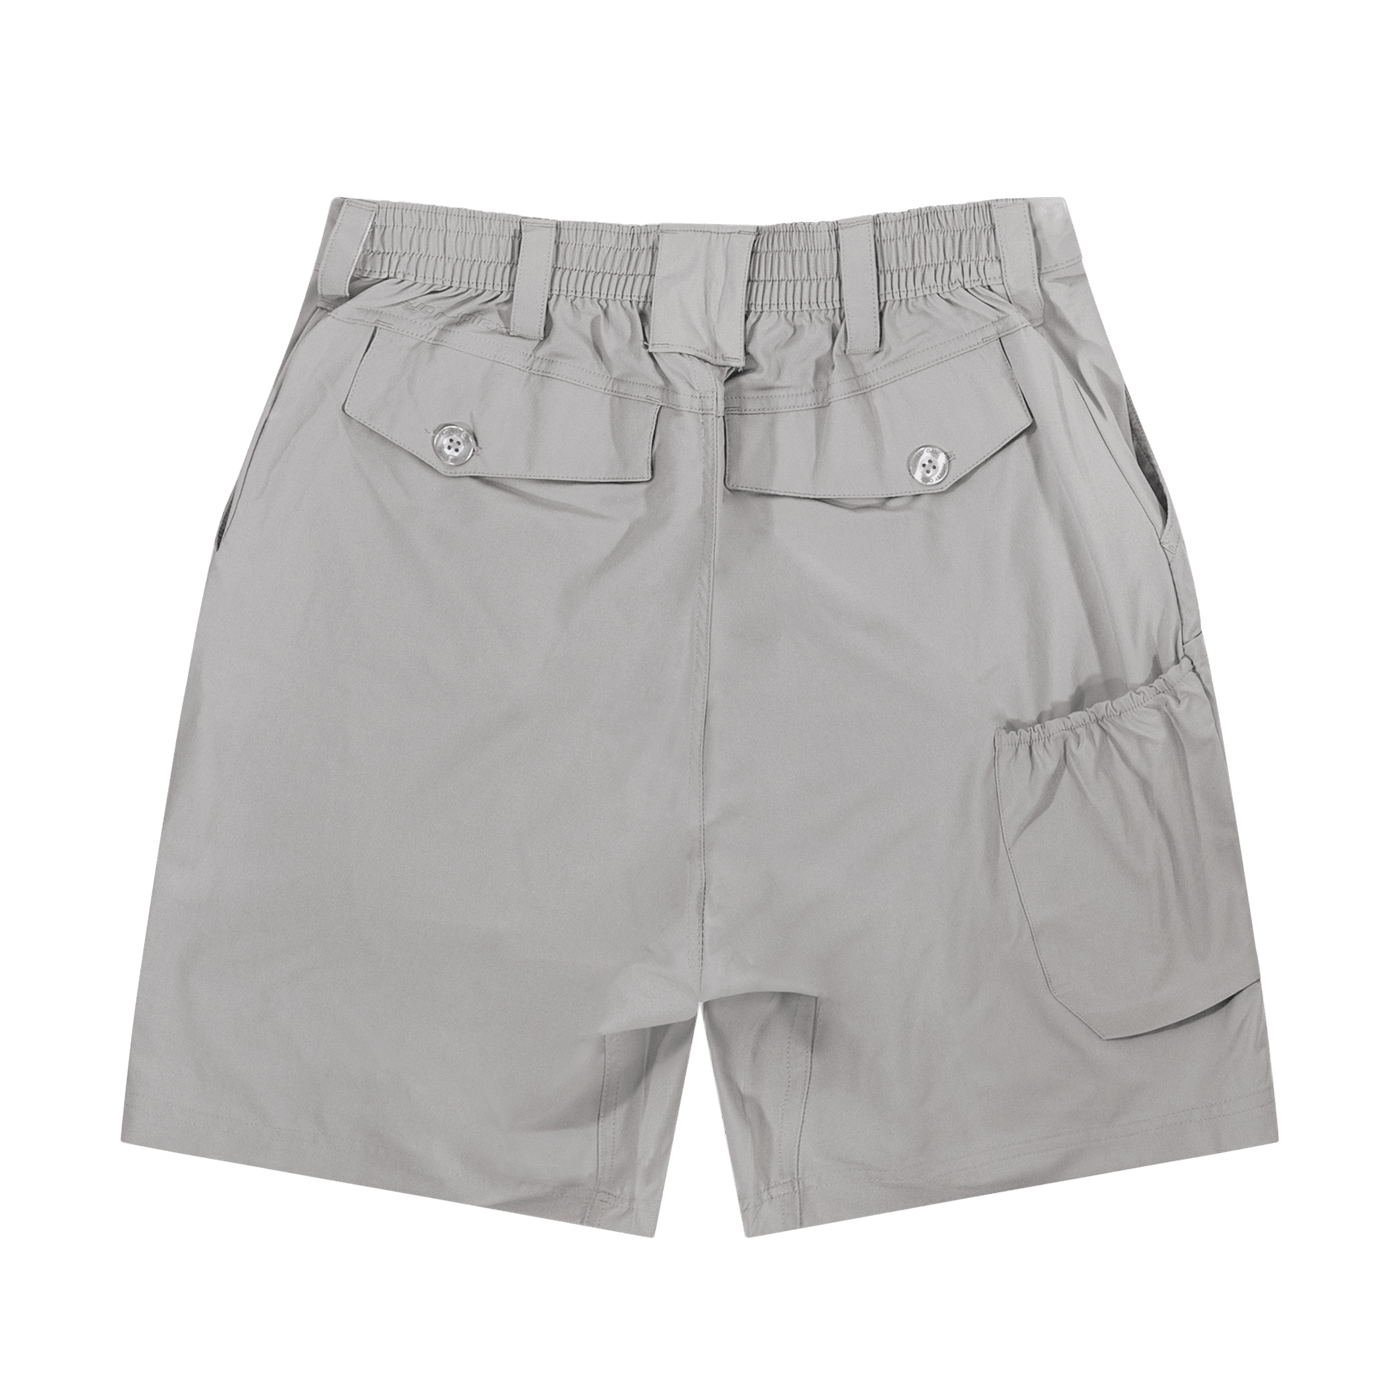 Mossy Oak Black Active Shorts for Men